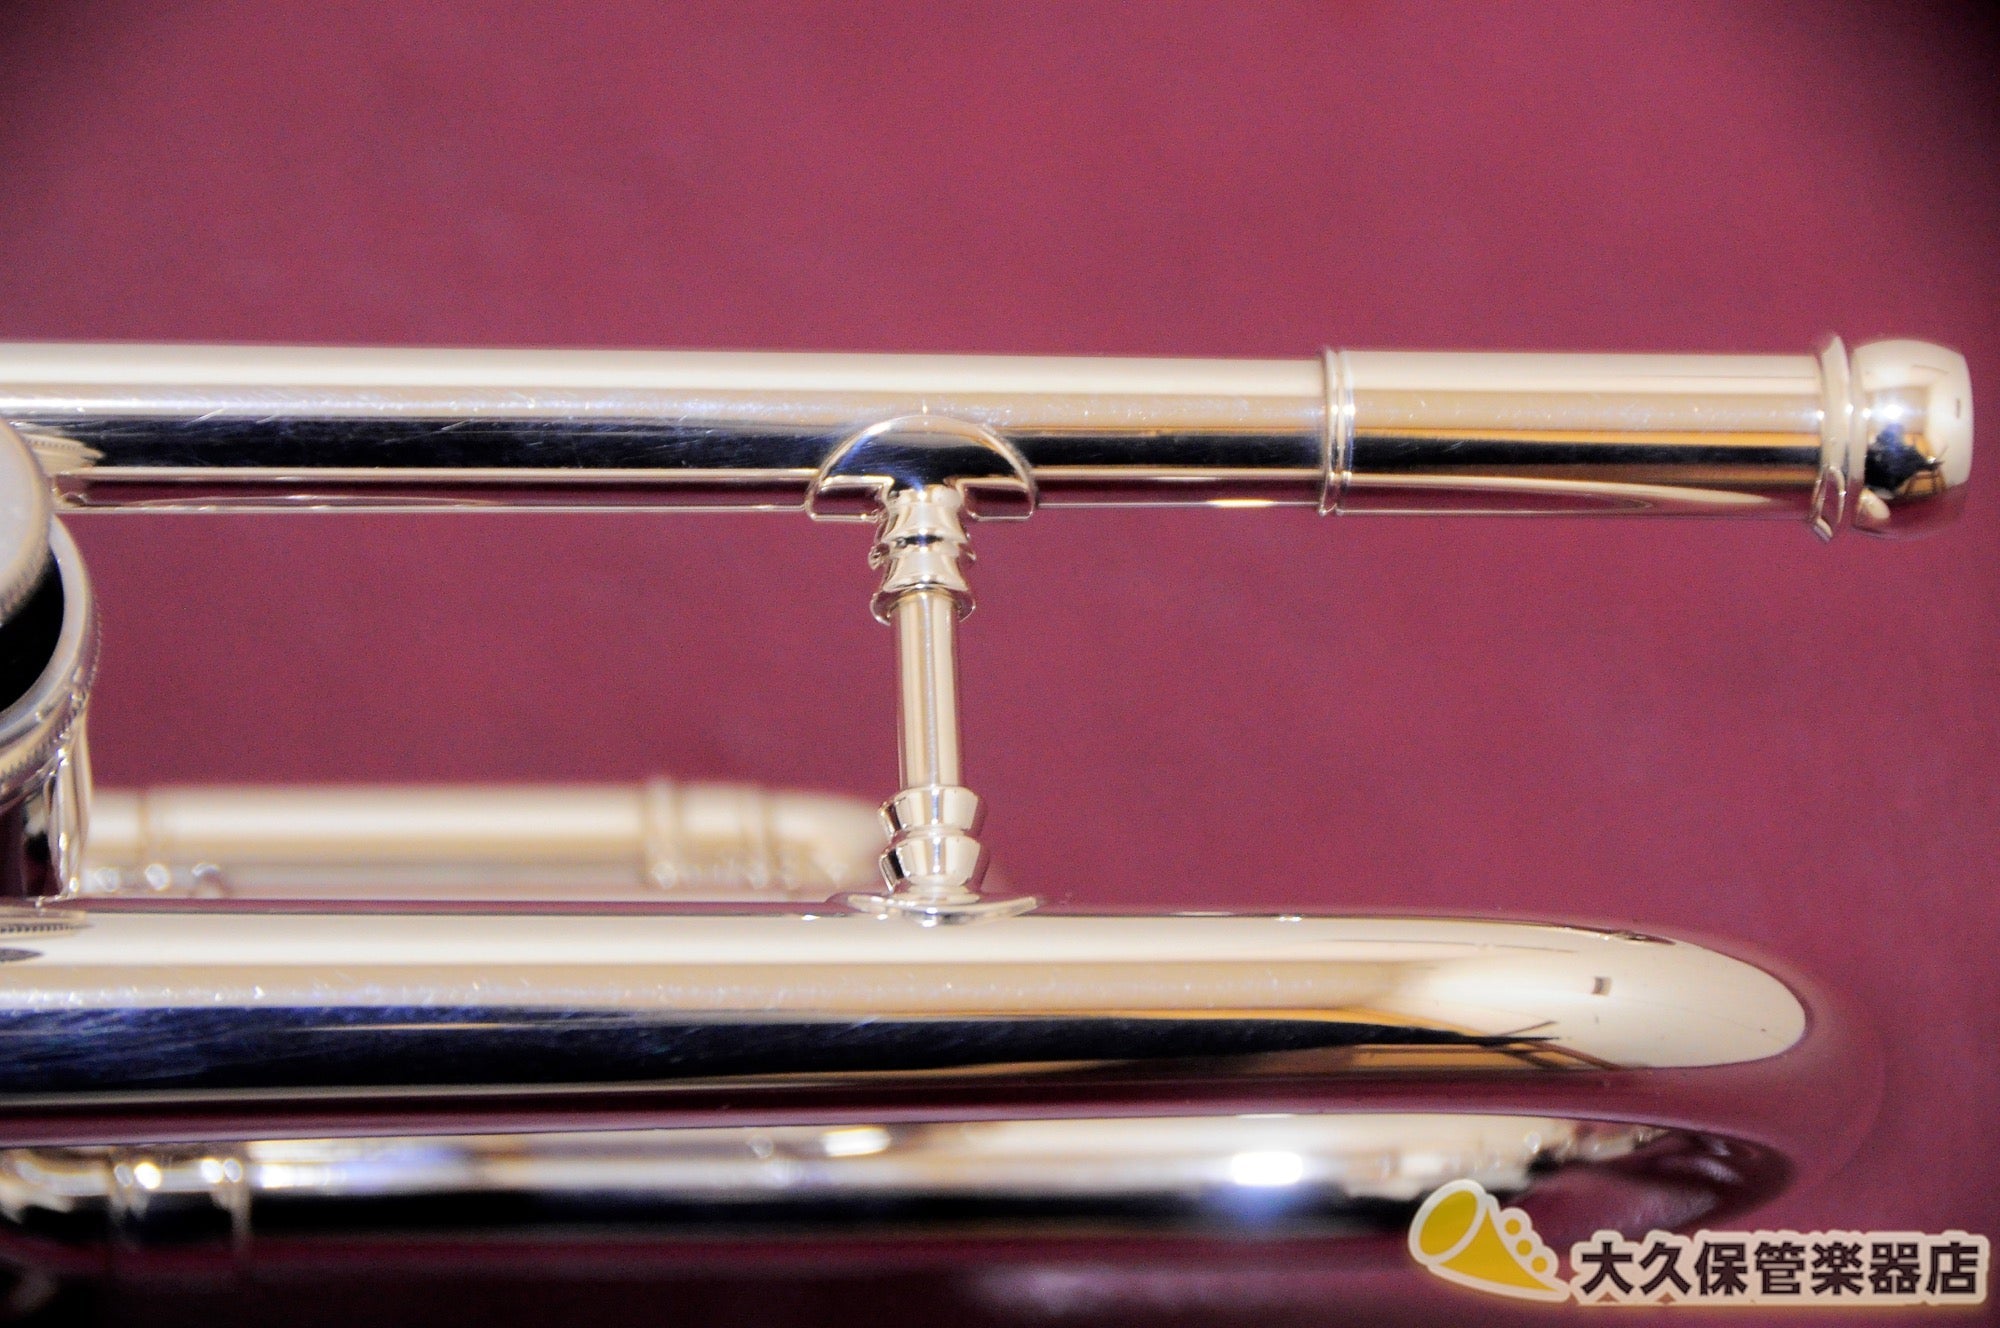 楽器・機材Conn 1B-46 Vintage One トランペット - 管楽器・吹奏楽器